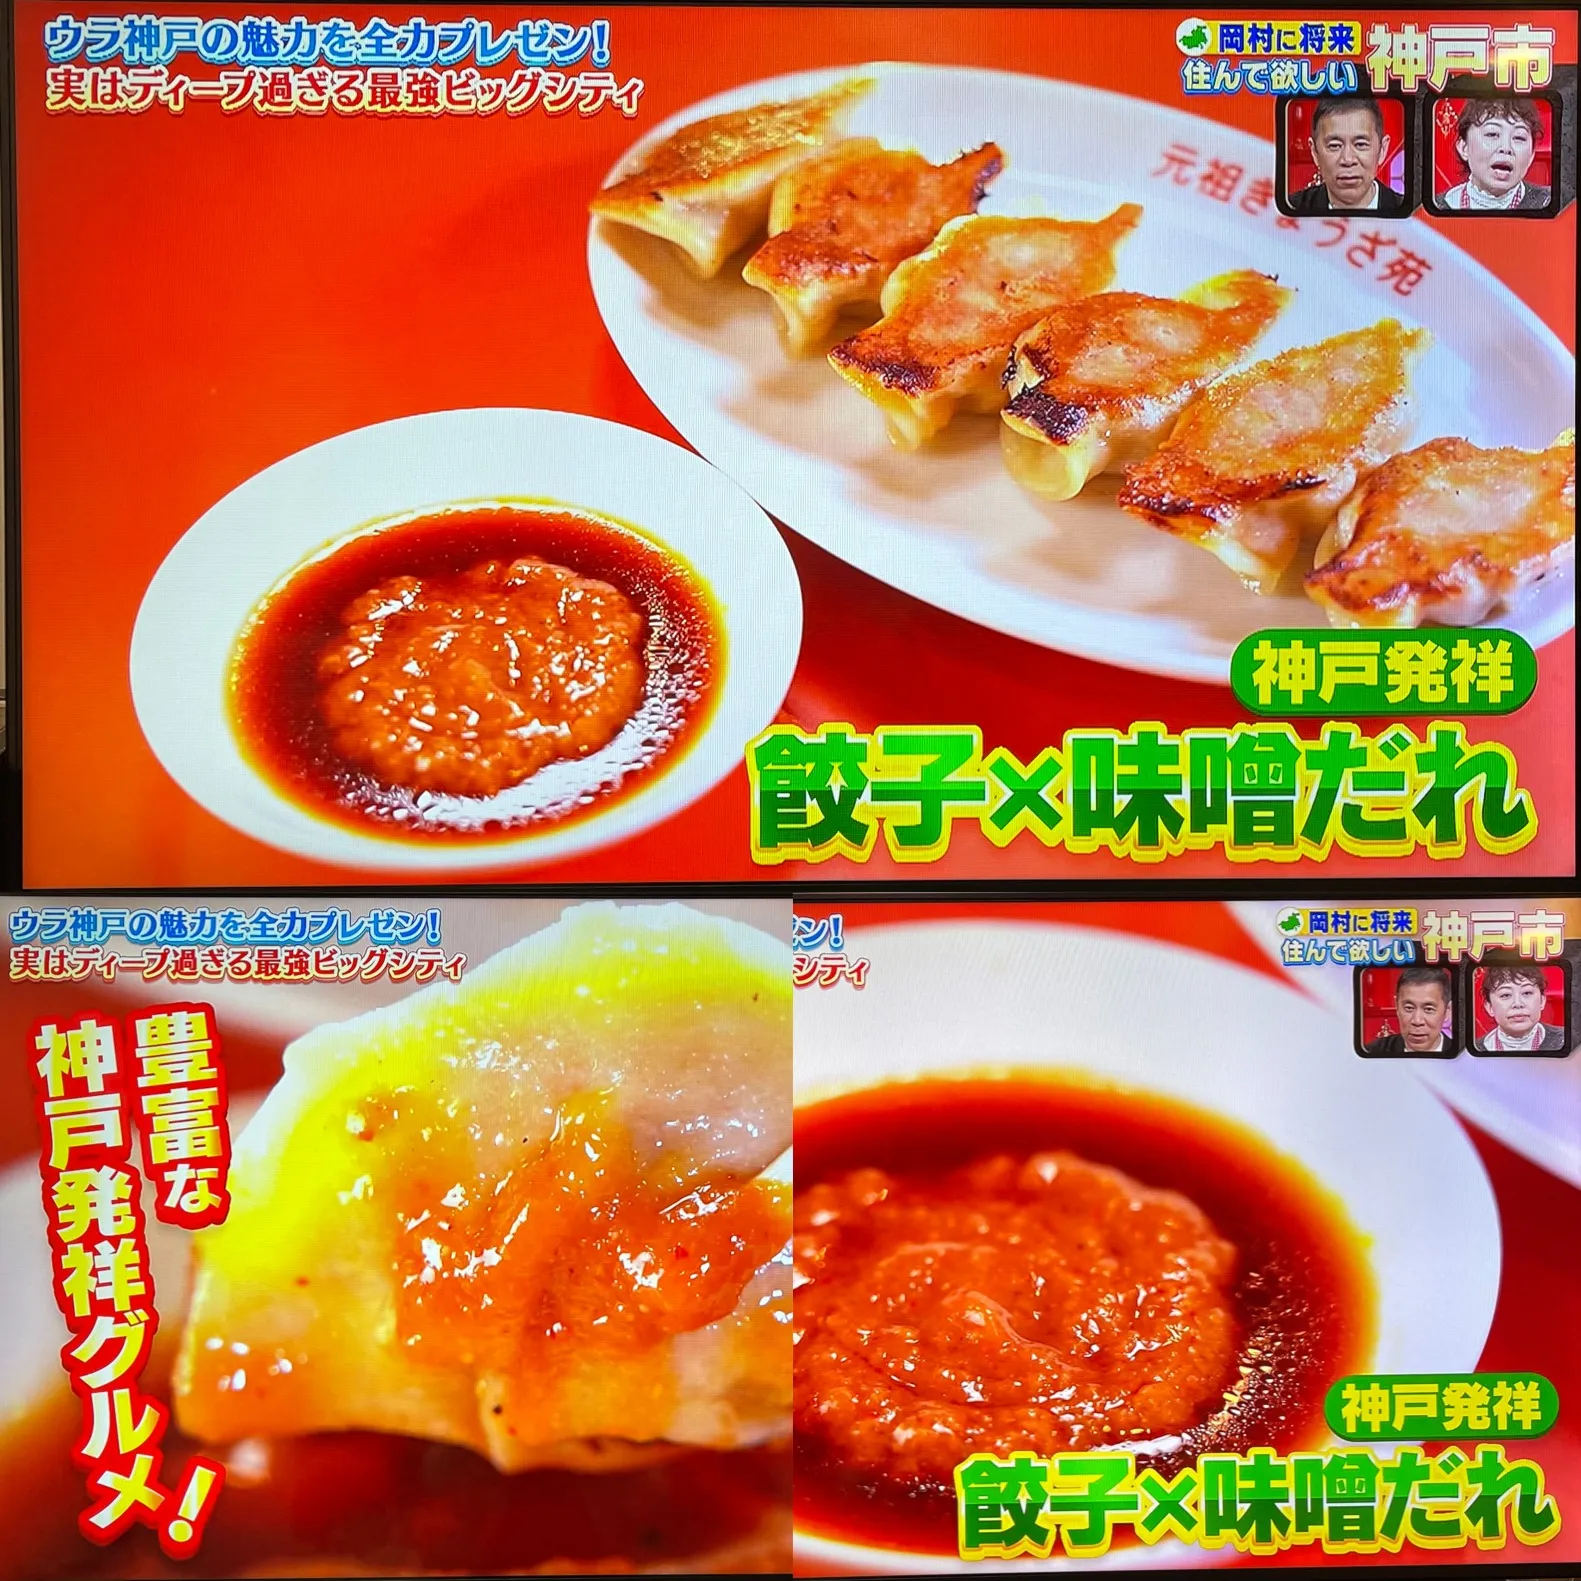 なるみ岡村の過ぎるTV​ 「ウラ神戸の魅力」で！元祖ぎょうざ苑の味噌だれ餃子が紹介されました  ​